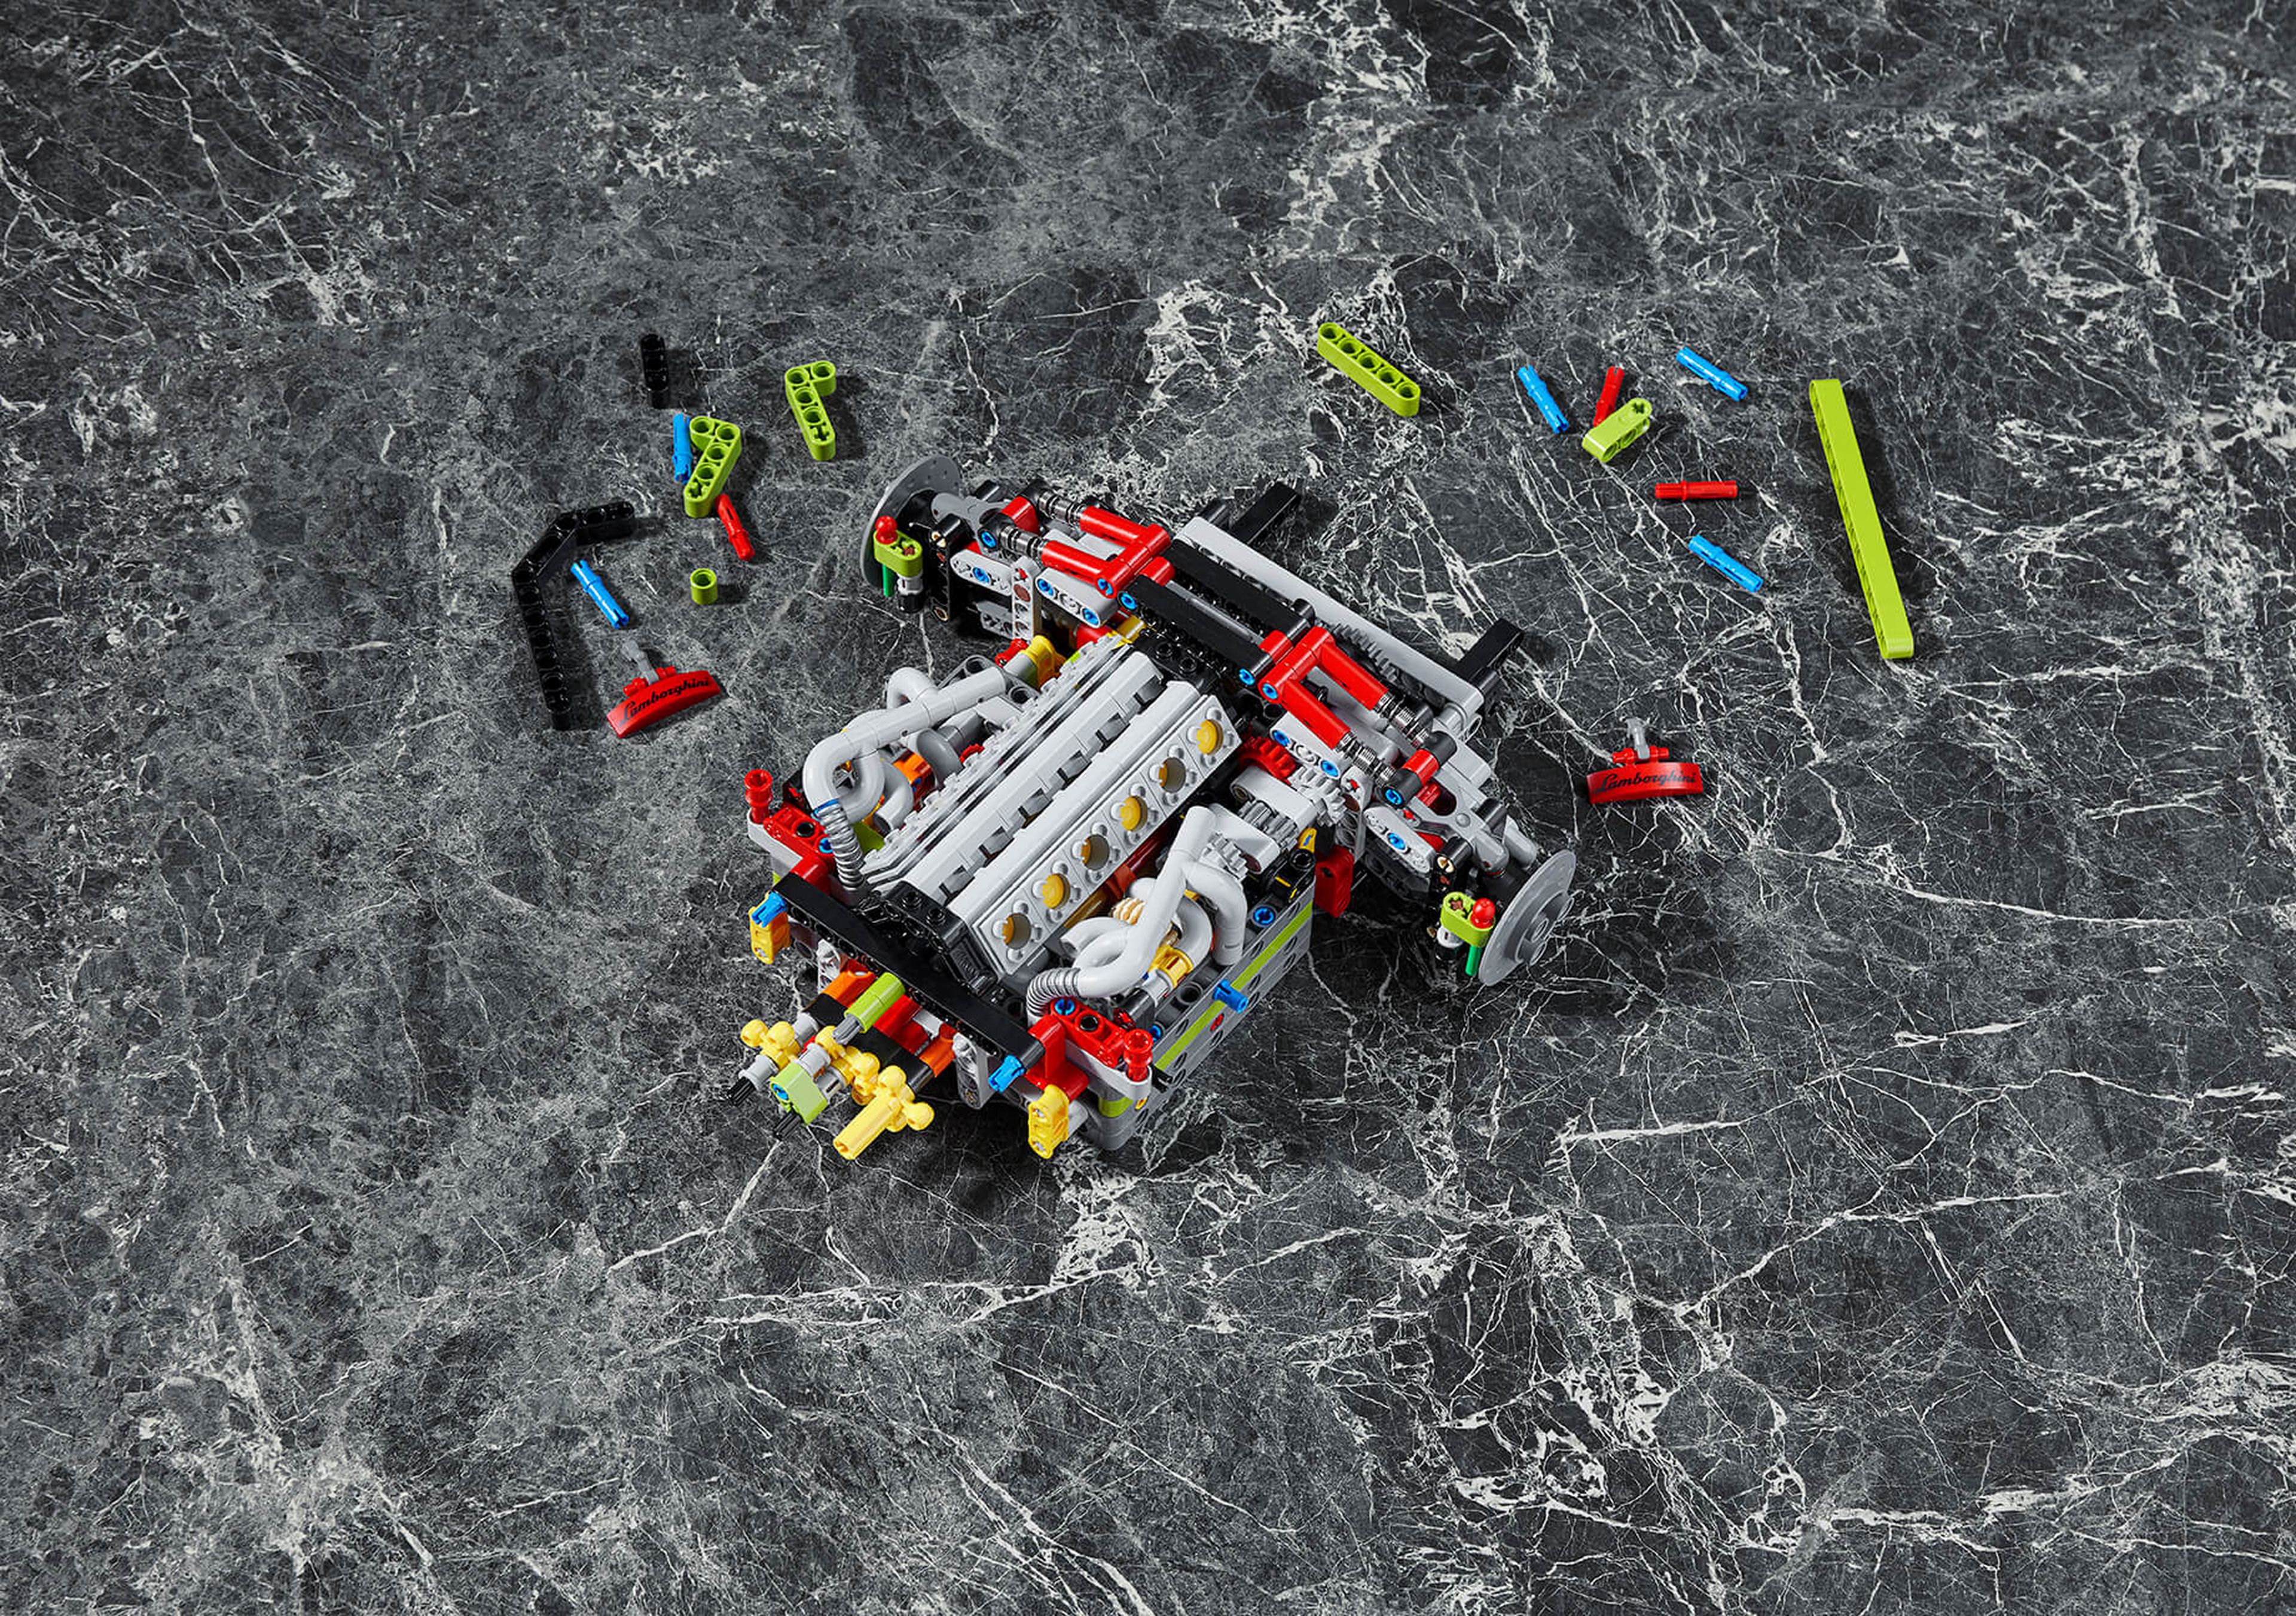 El Lamborghini Sián ya forma parte del exclusivo garaje de Lego Technic